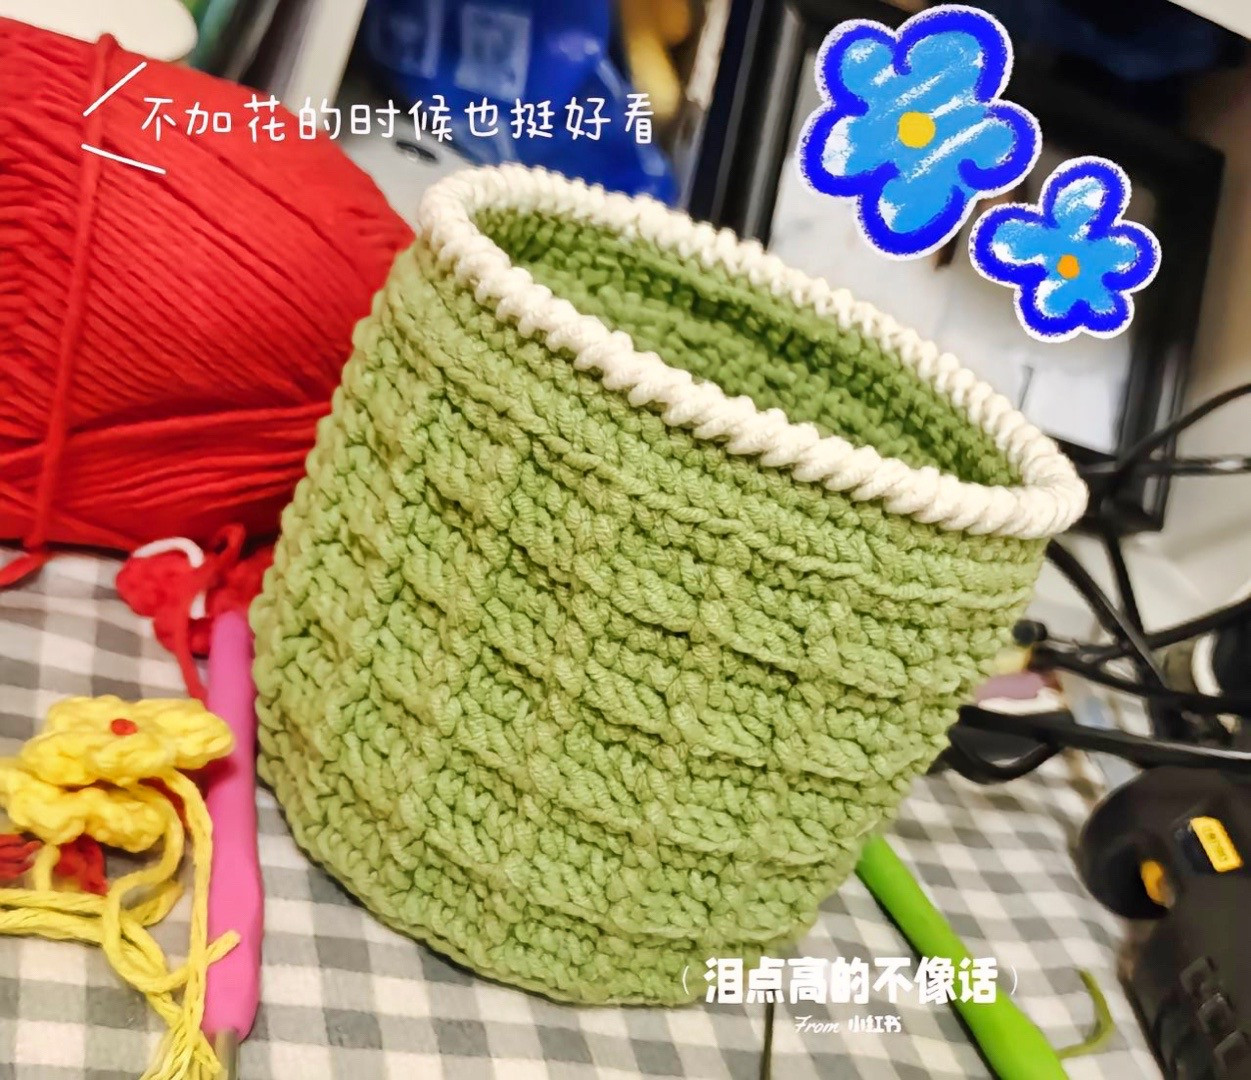 Pen basket crochet pattern